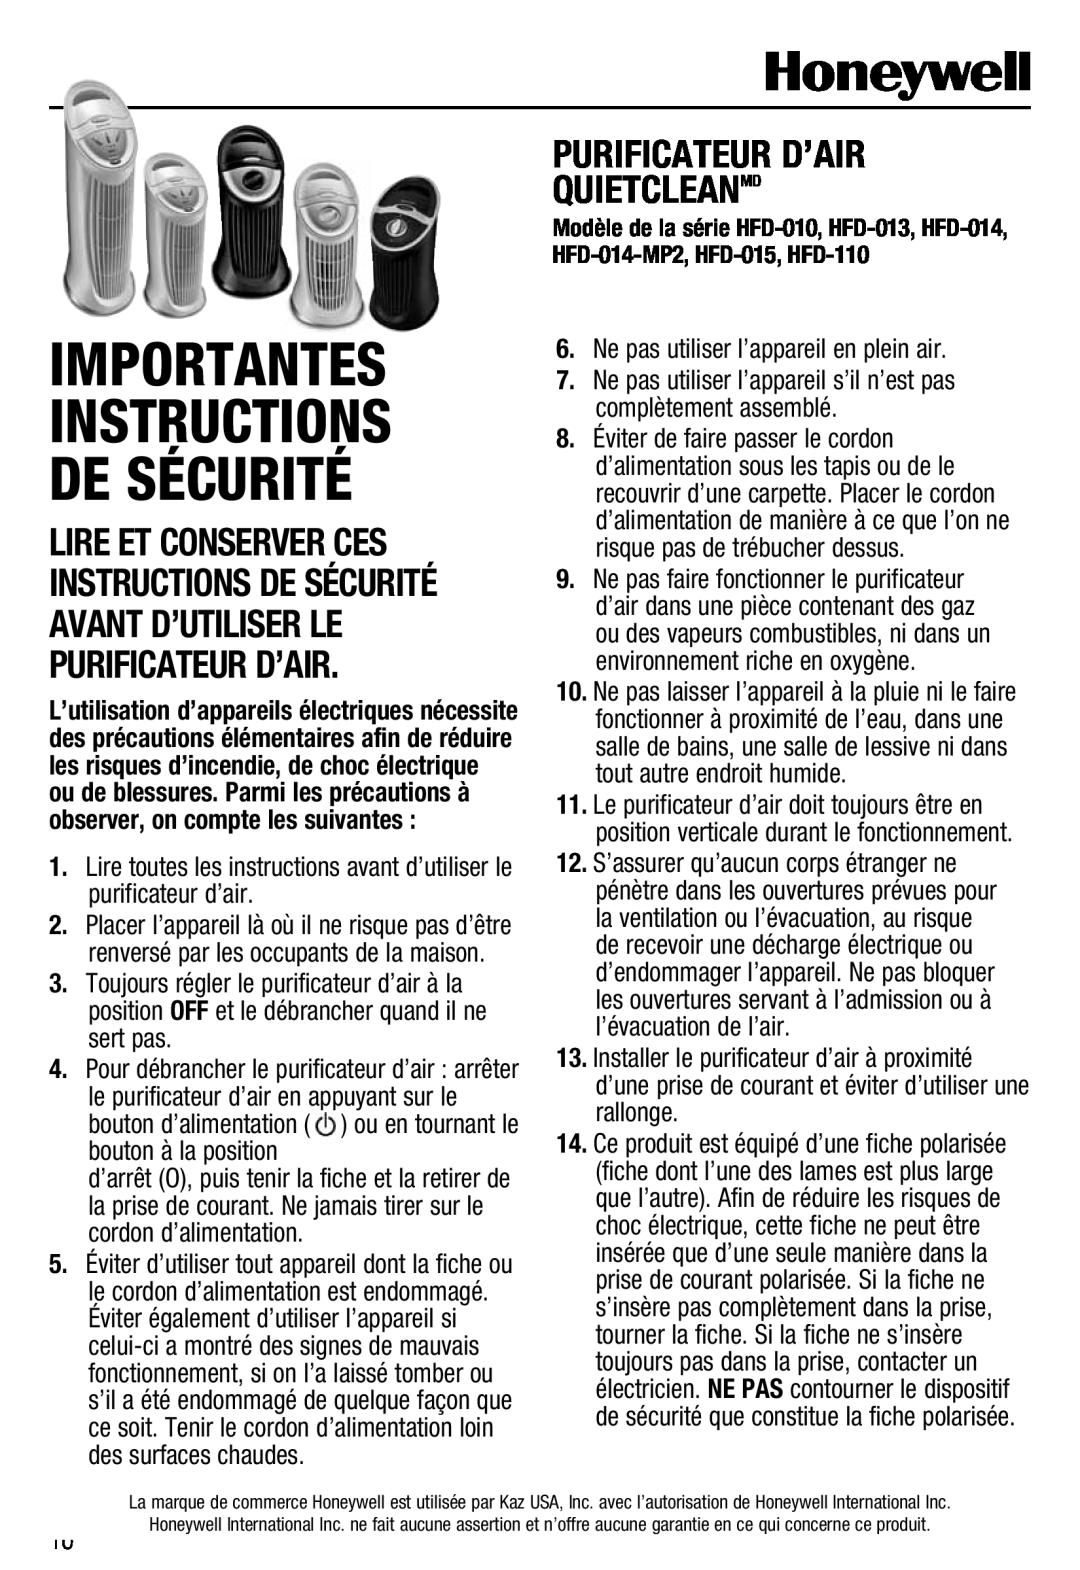 Honeywell HFD110 important safety instructions Purificateur D’Air Quietcleanmd, Importantes Instructions De Sécurité 